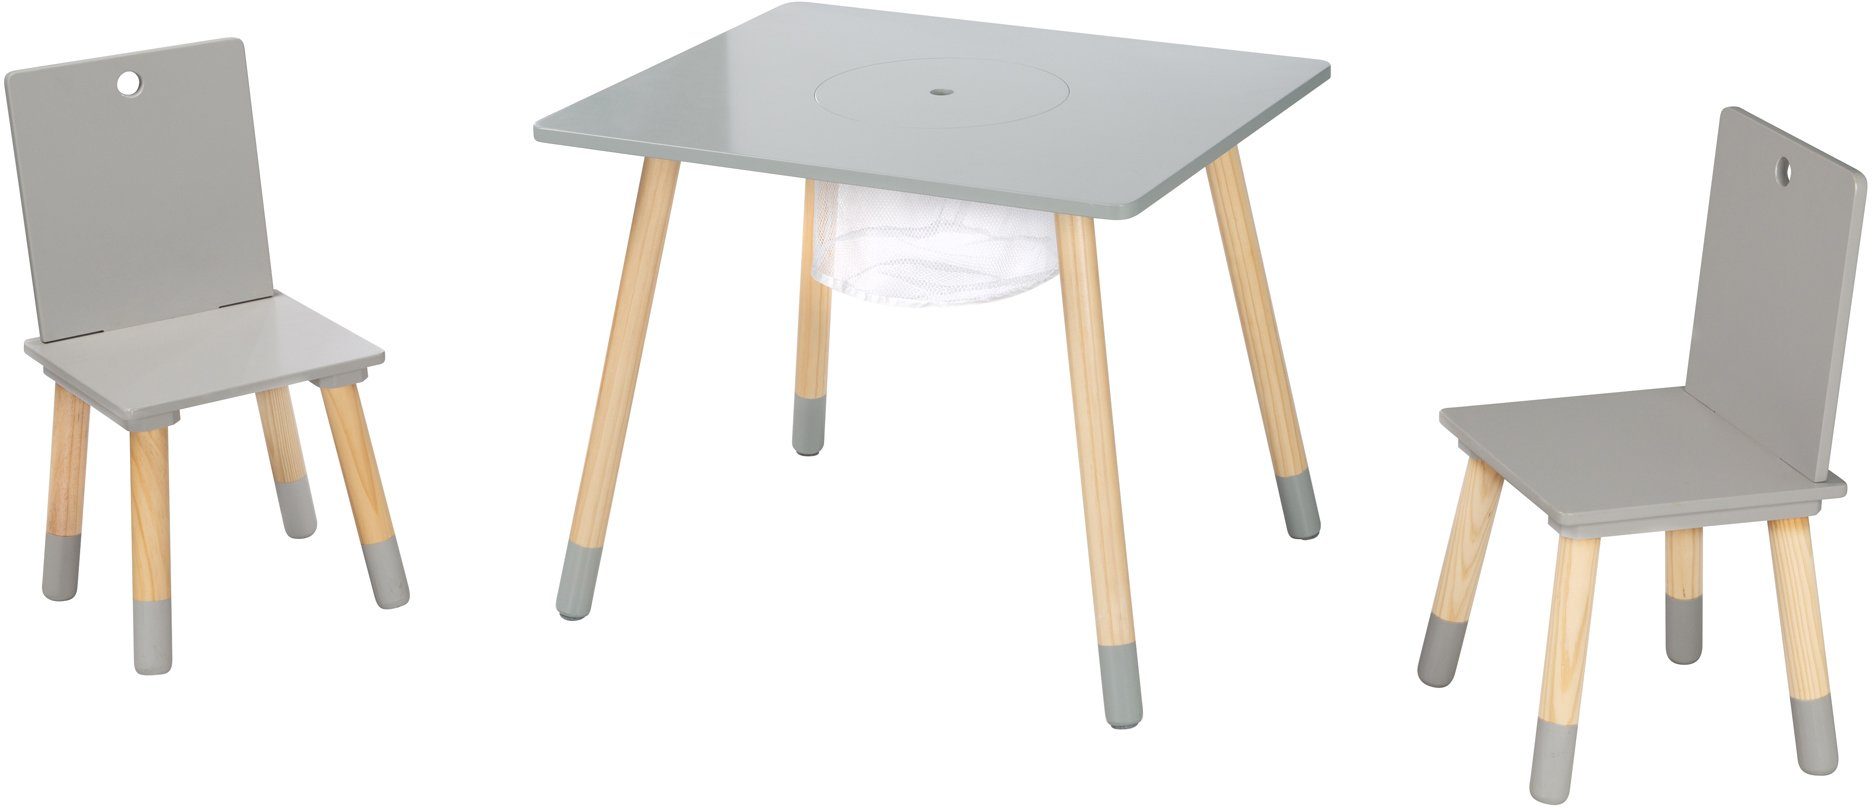 roba® Kindersitzgruppe aus grau, Holz mit Aufbewahrungsnetz, Sitzgruppe